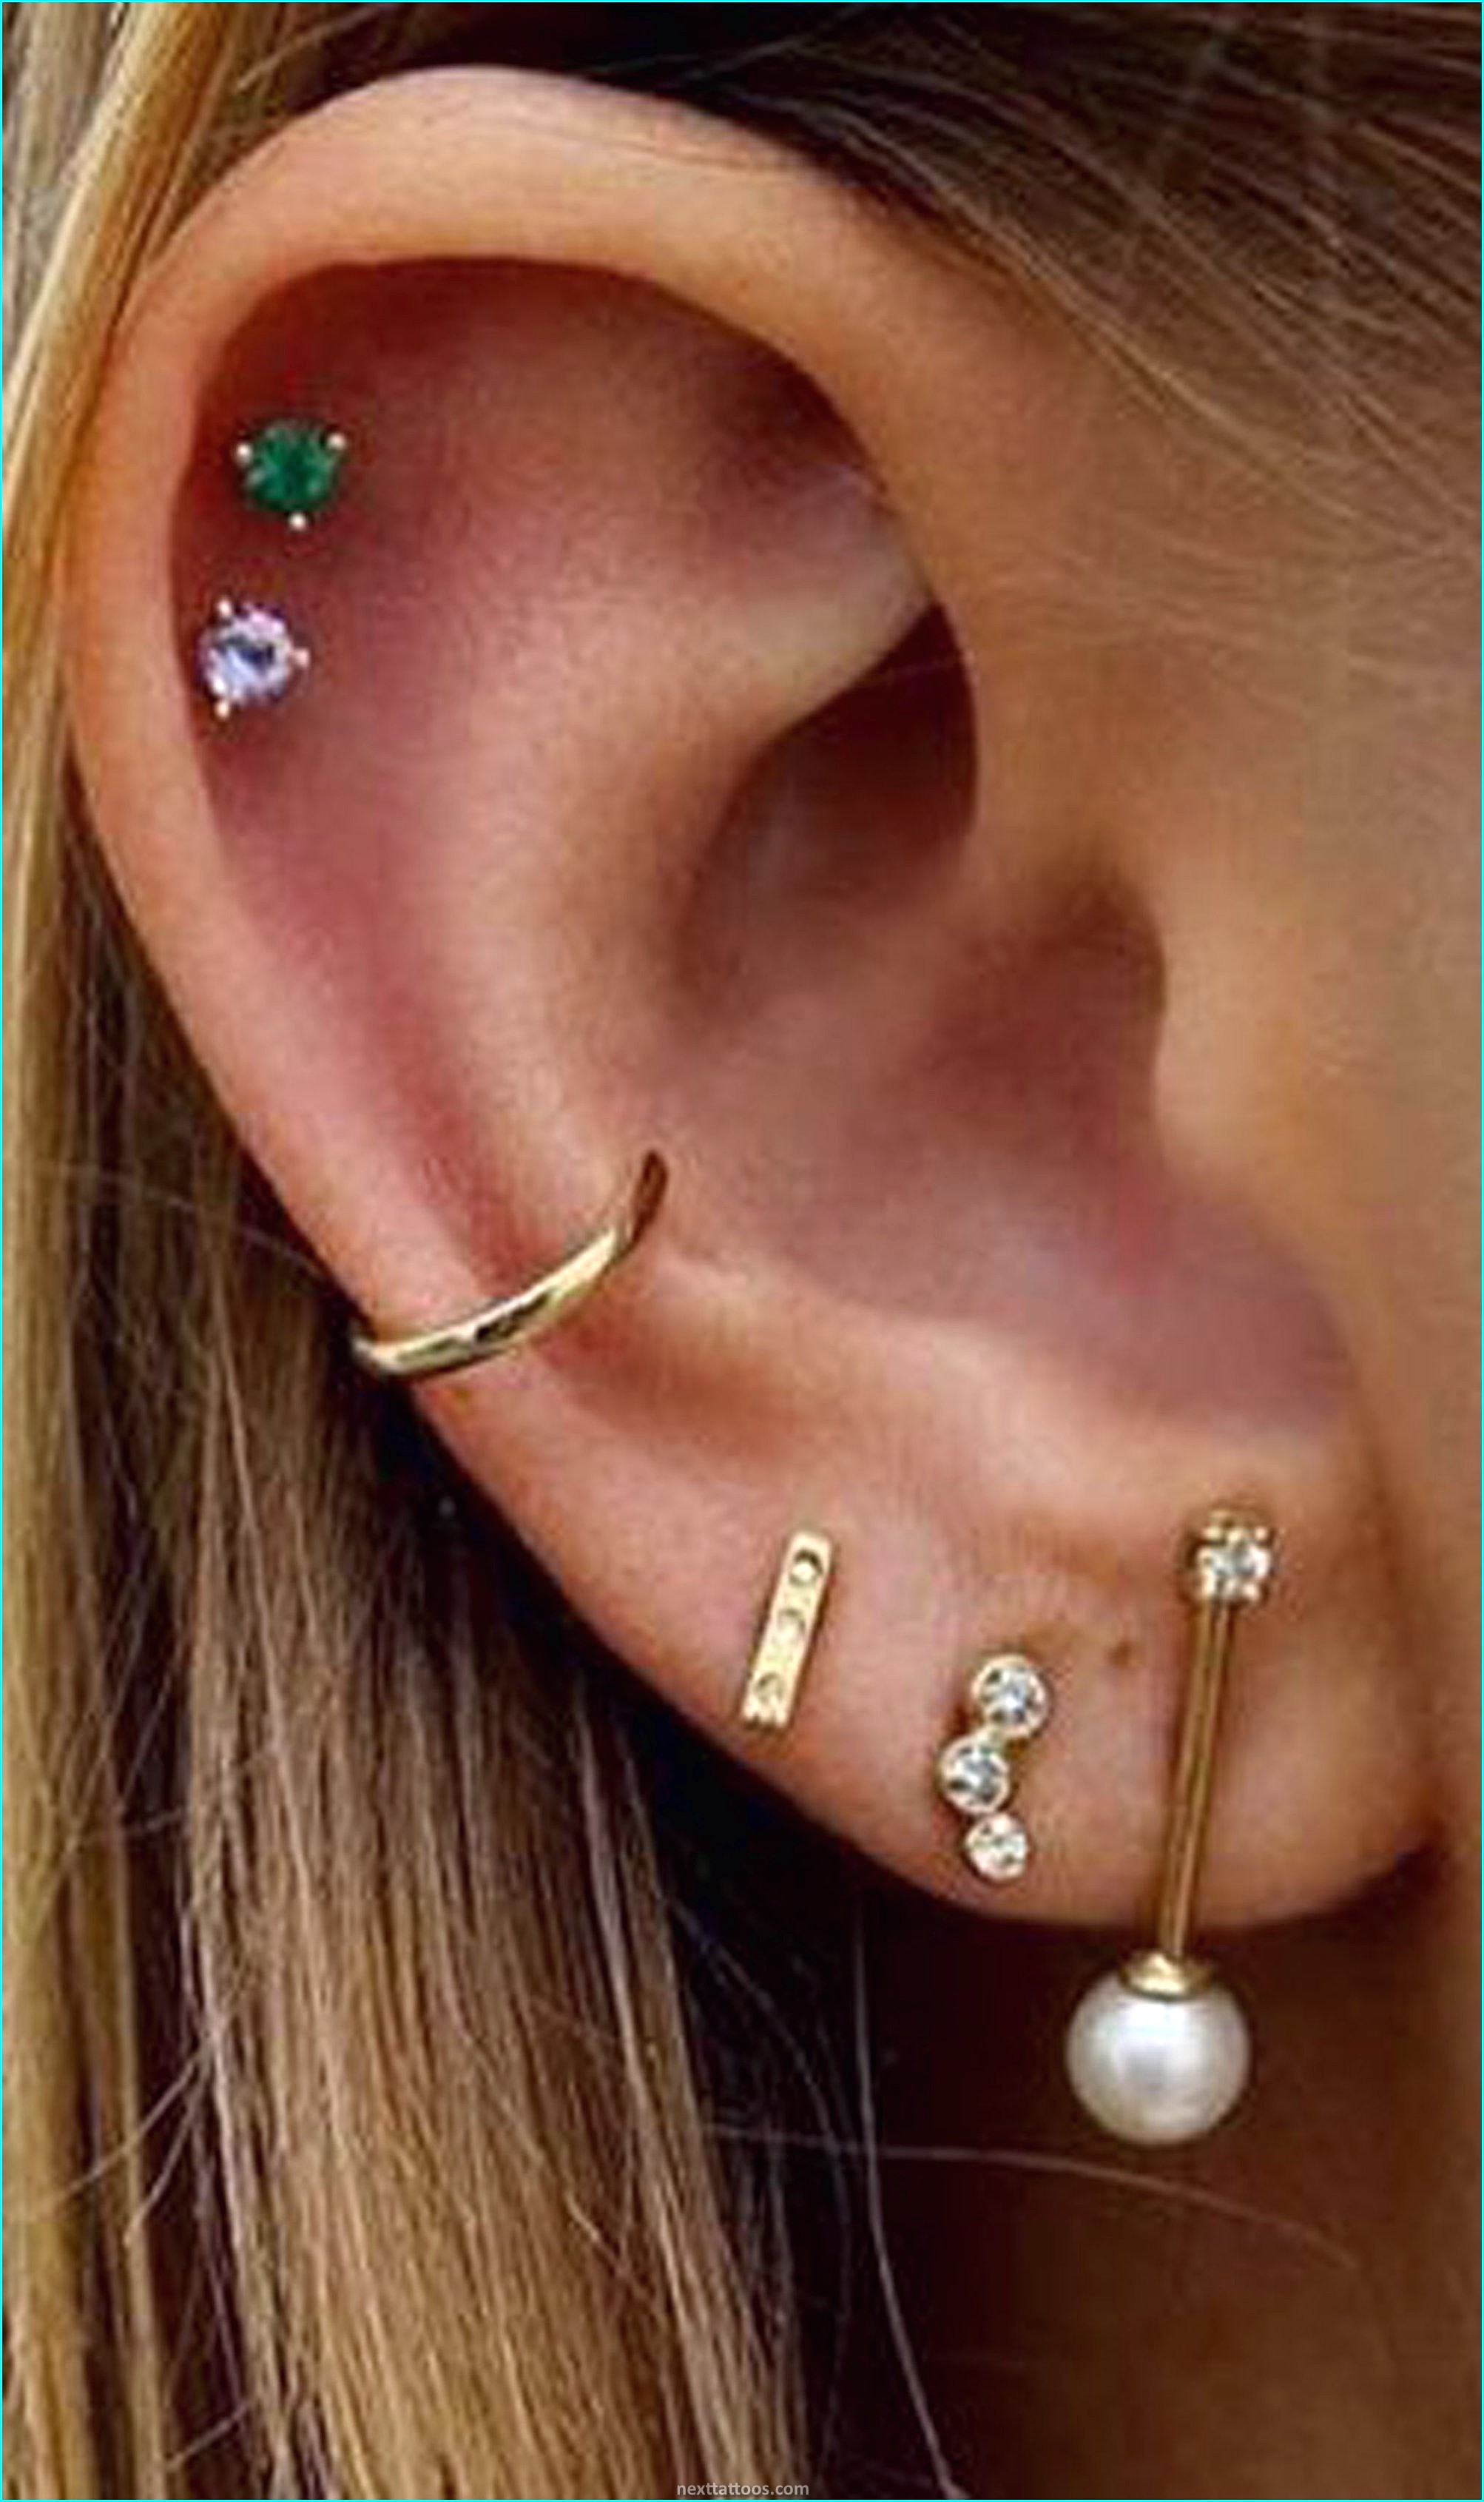 Cute Earring Piercing Ideas